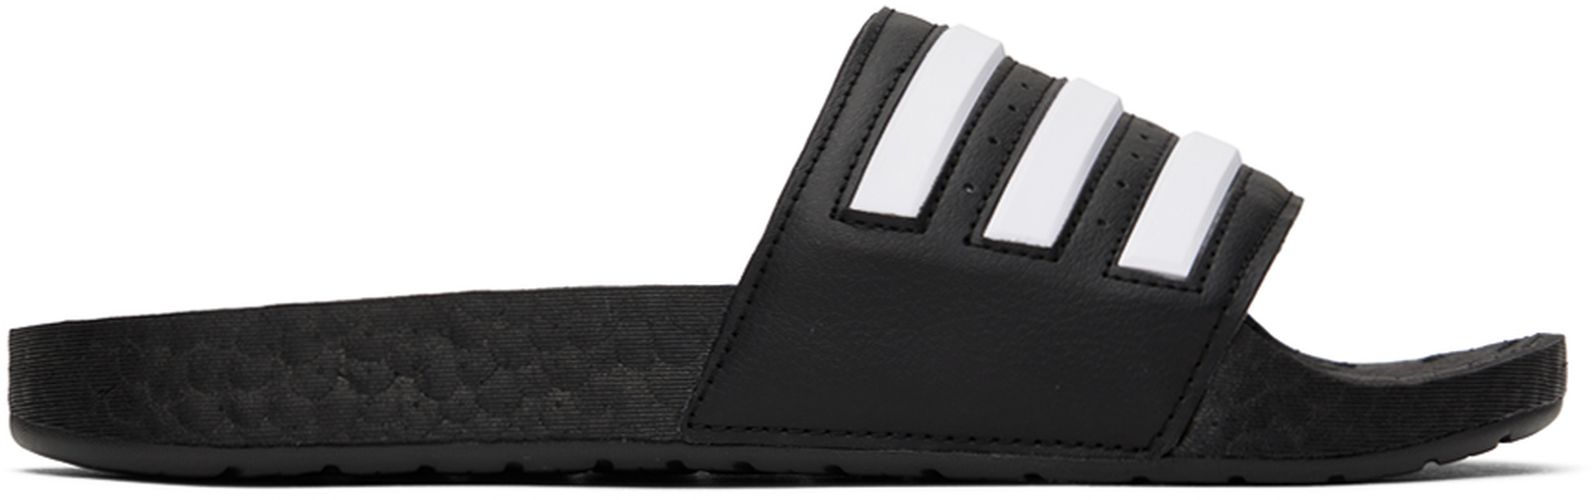 Black & White Adilette Boost Slides - adidas Originals - Modalova